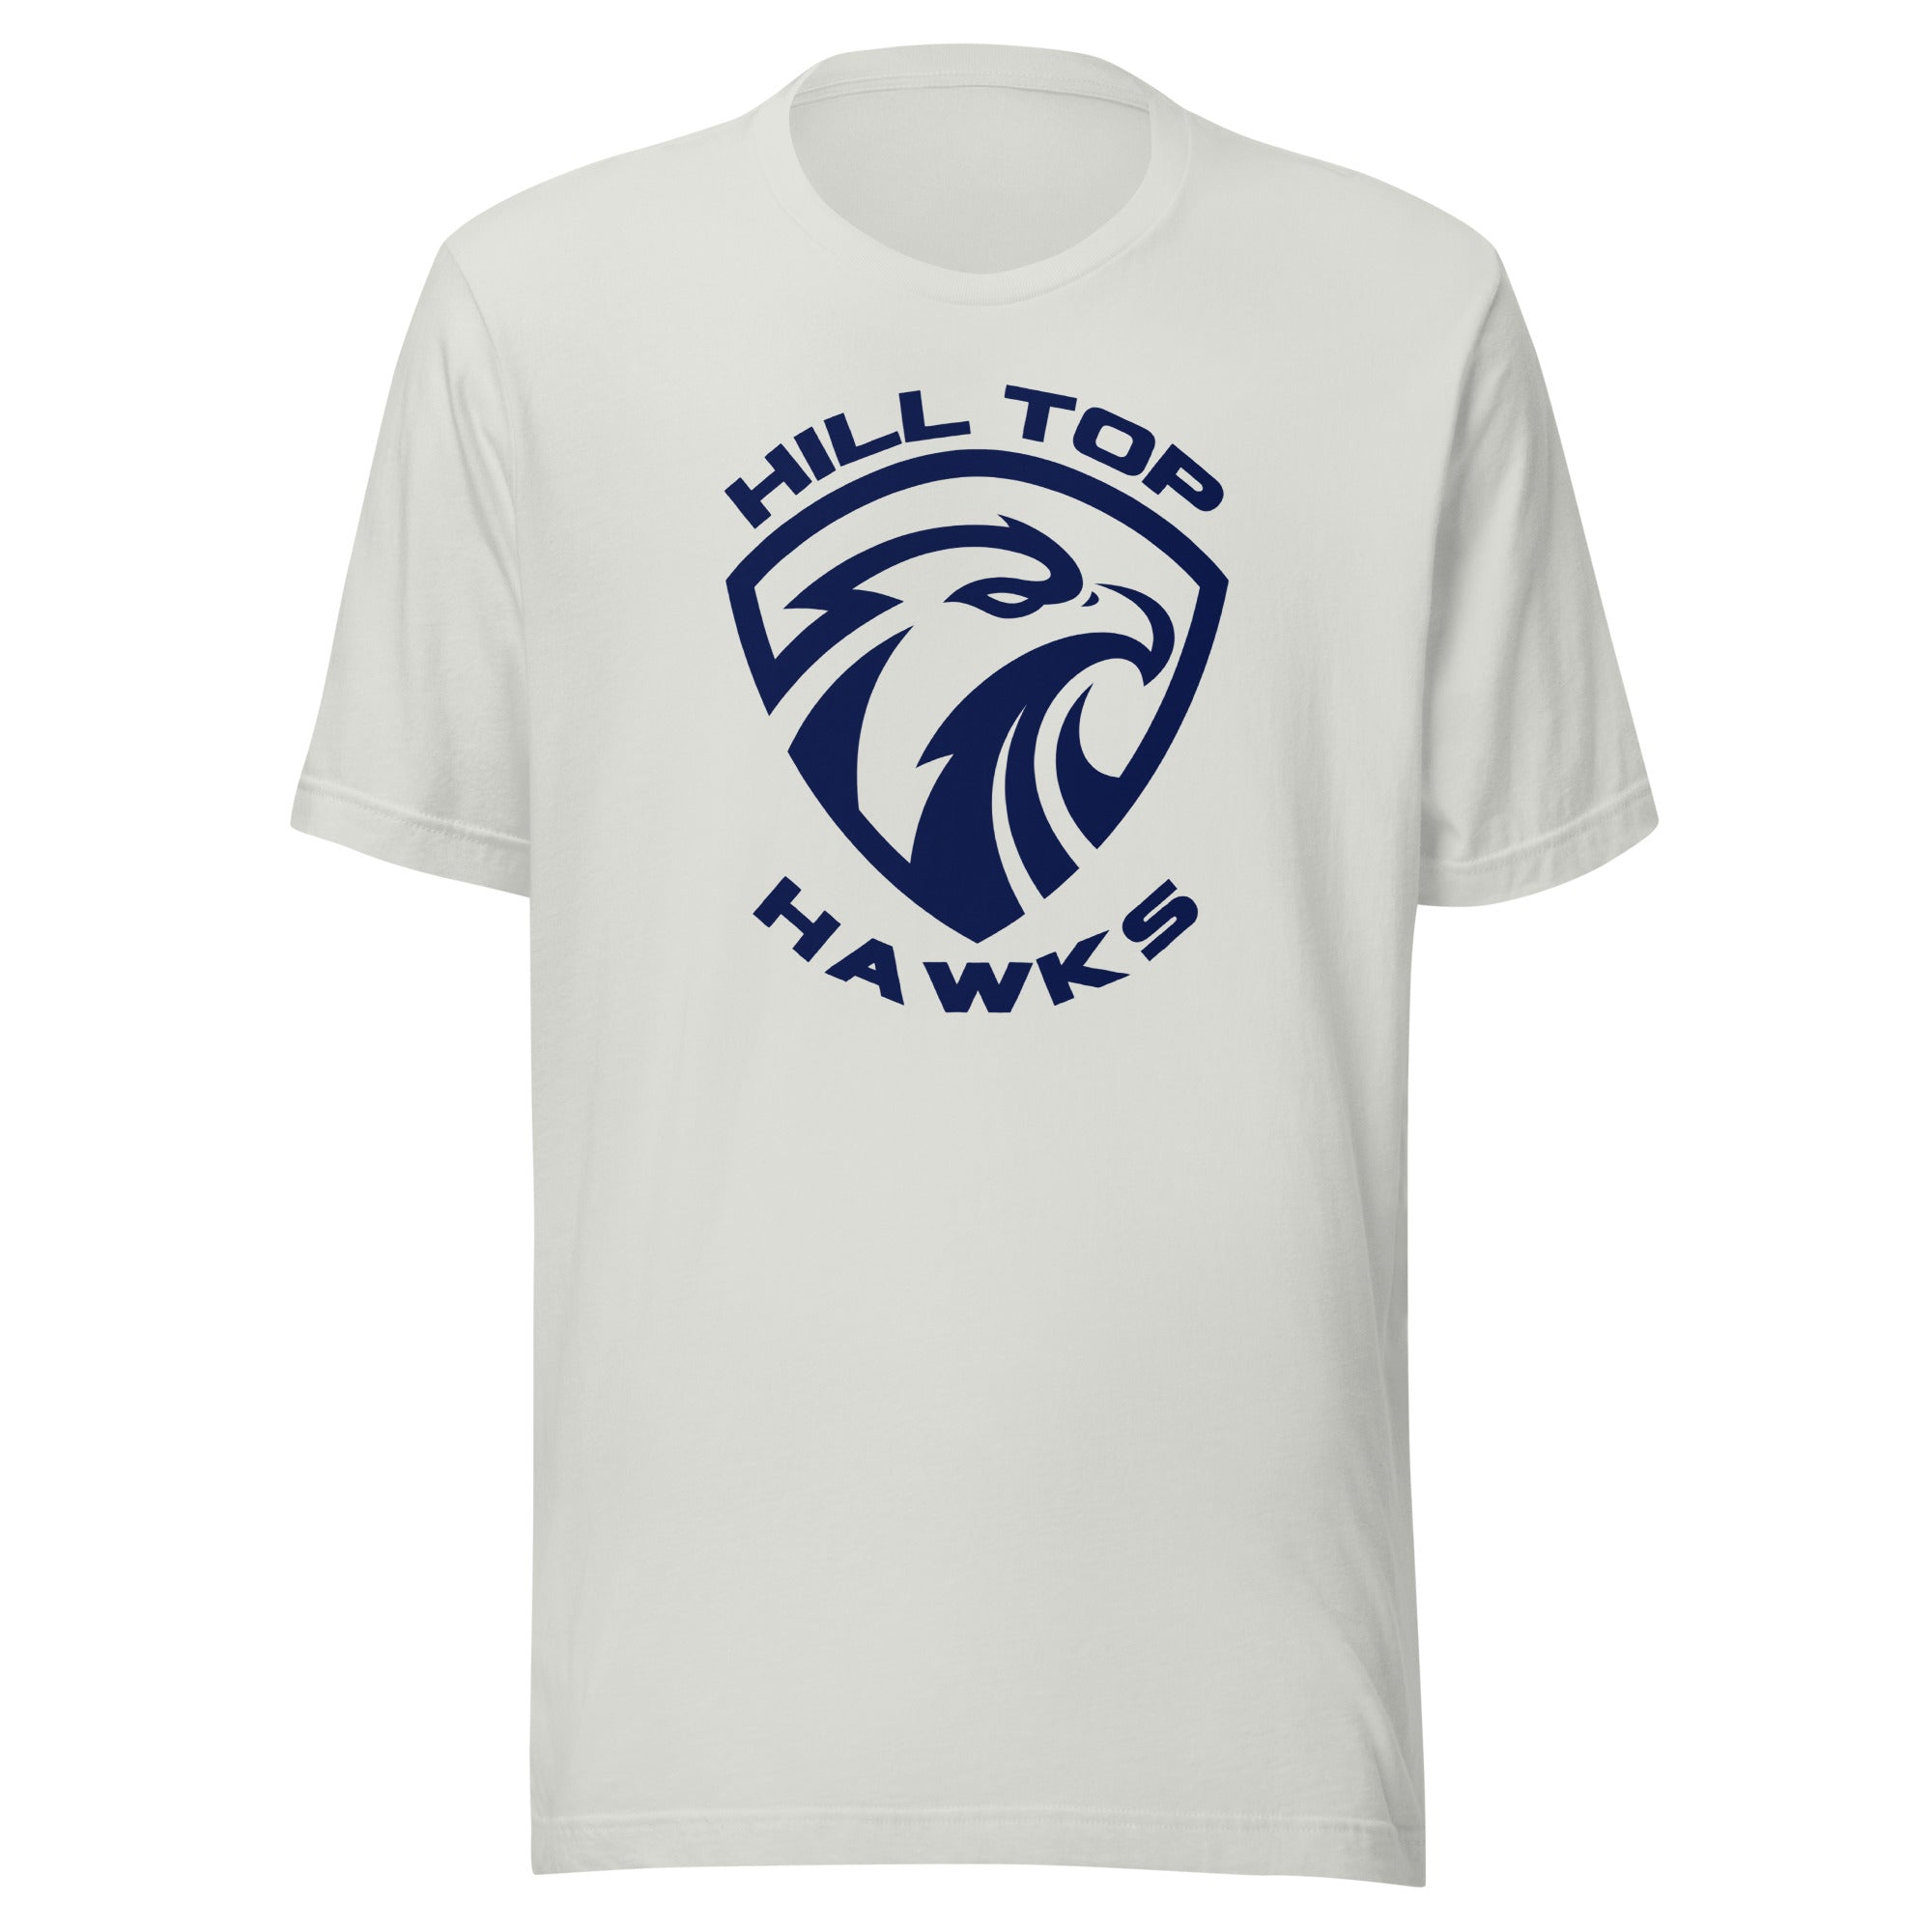 Hill Top T Shirt